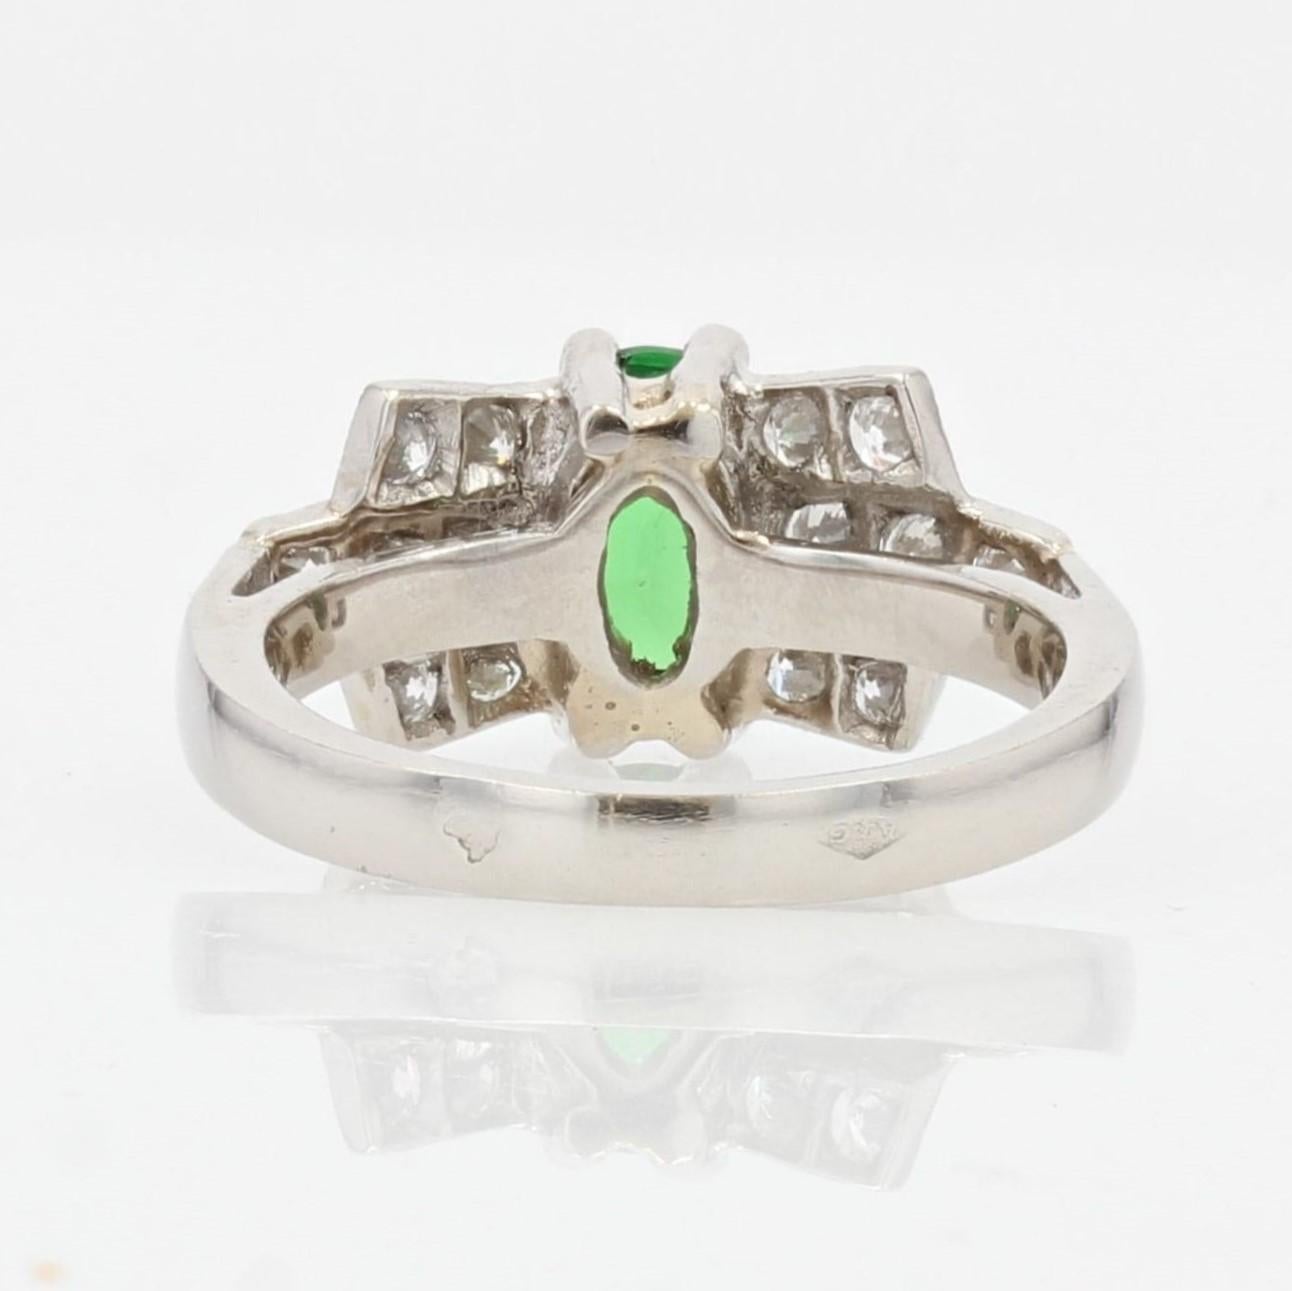 French Modern Art Deco Style Tsavorite Garnet Diamonds Platinum Ring For Sale 7